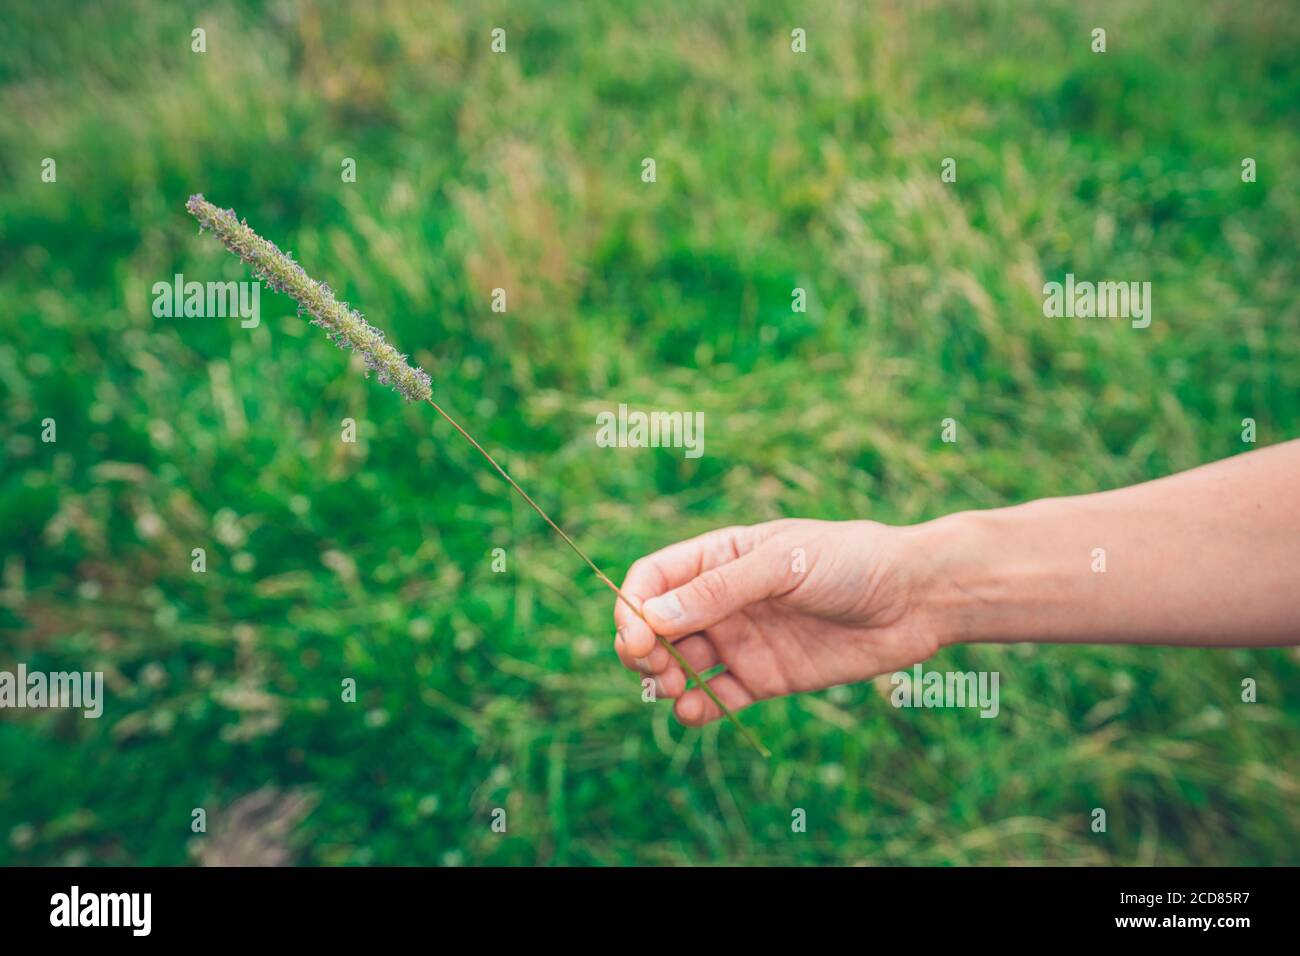 La main d'une jeune femme tient un long herbe dans un champ Banque D'Images